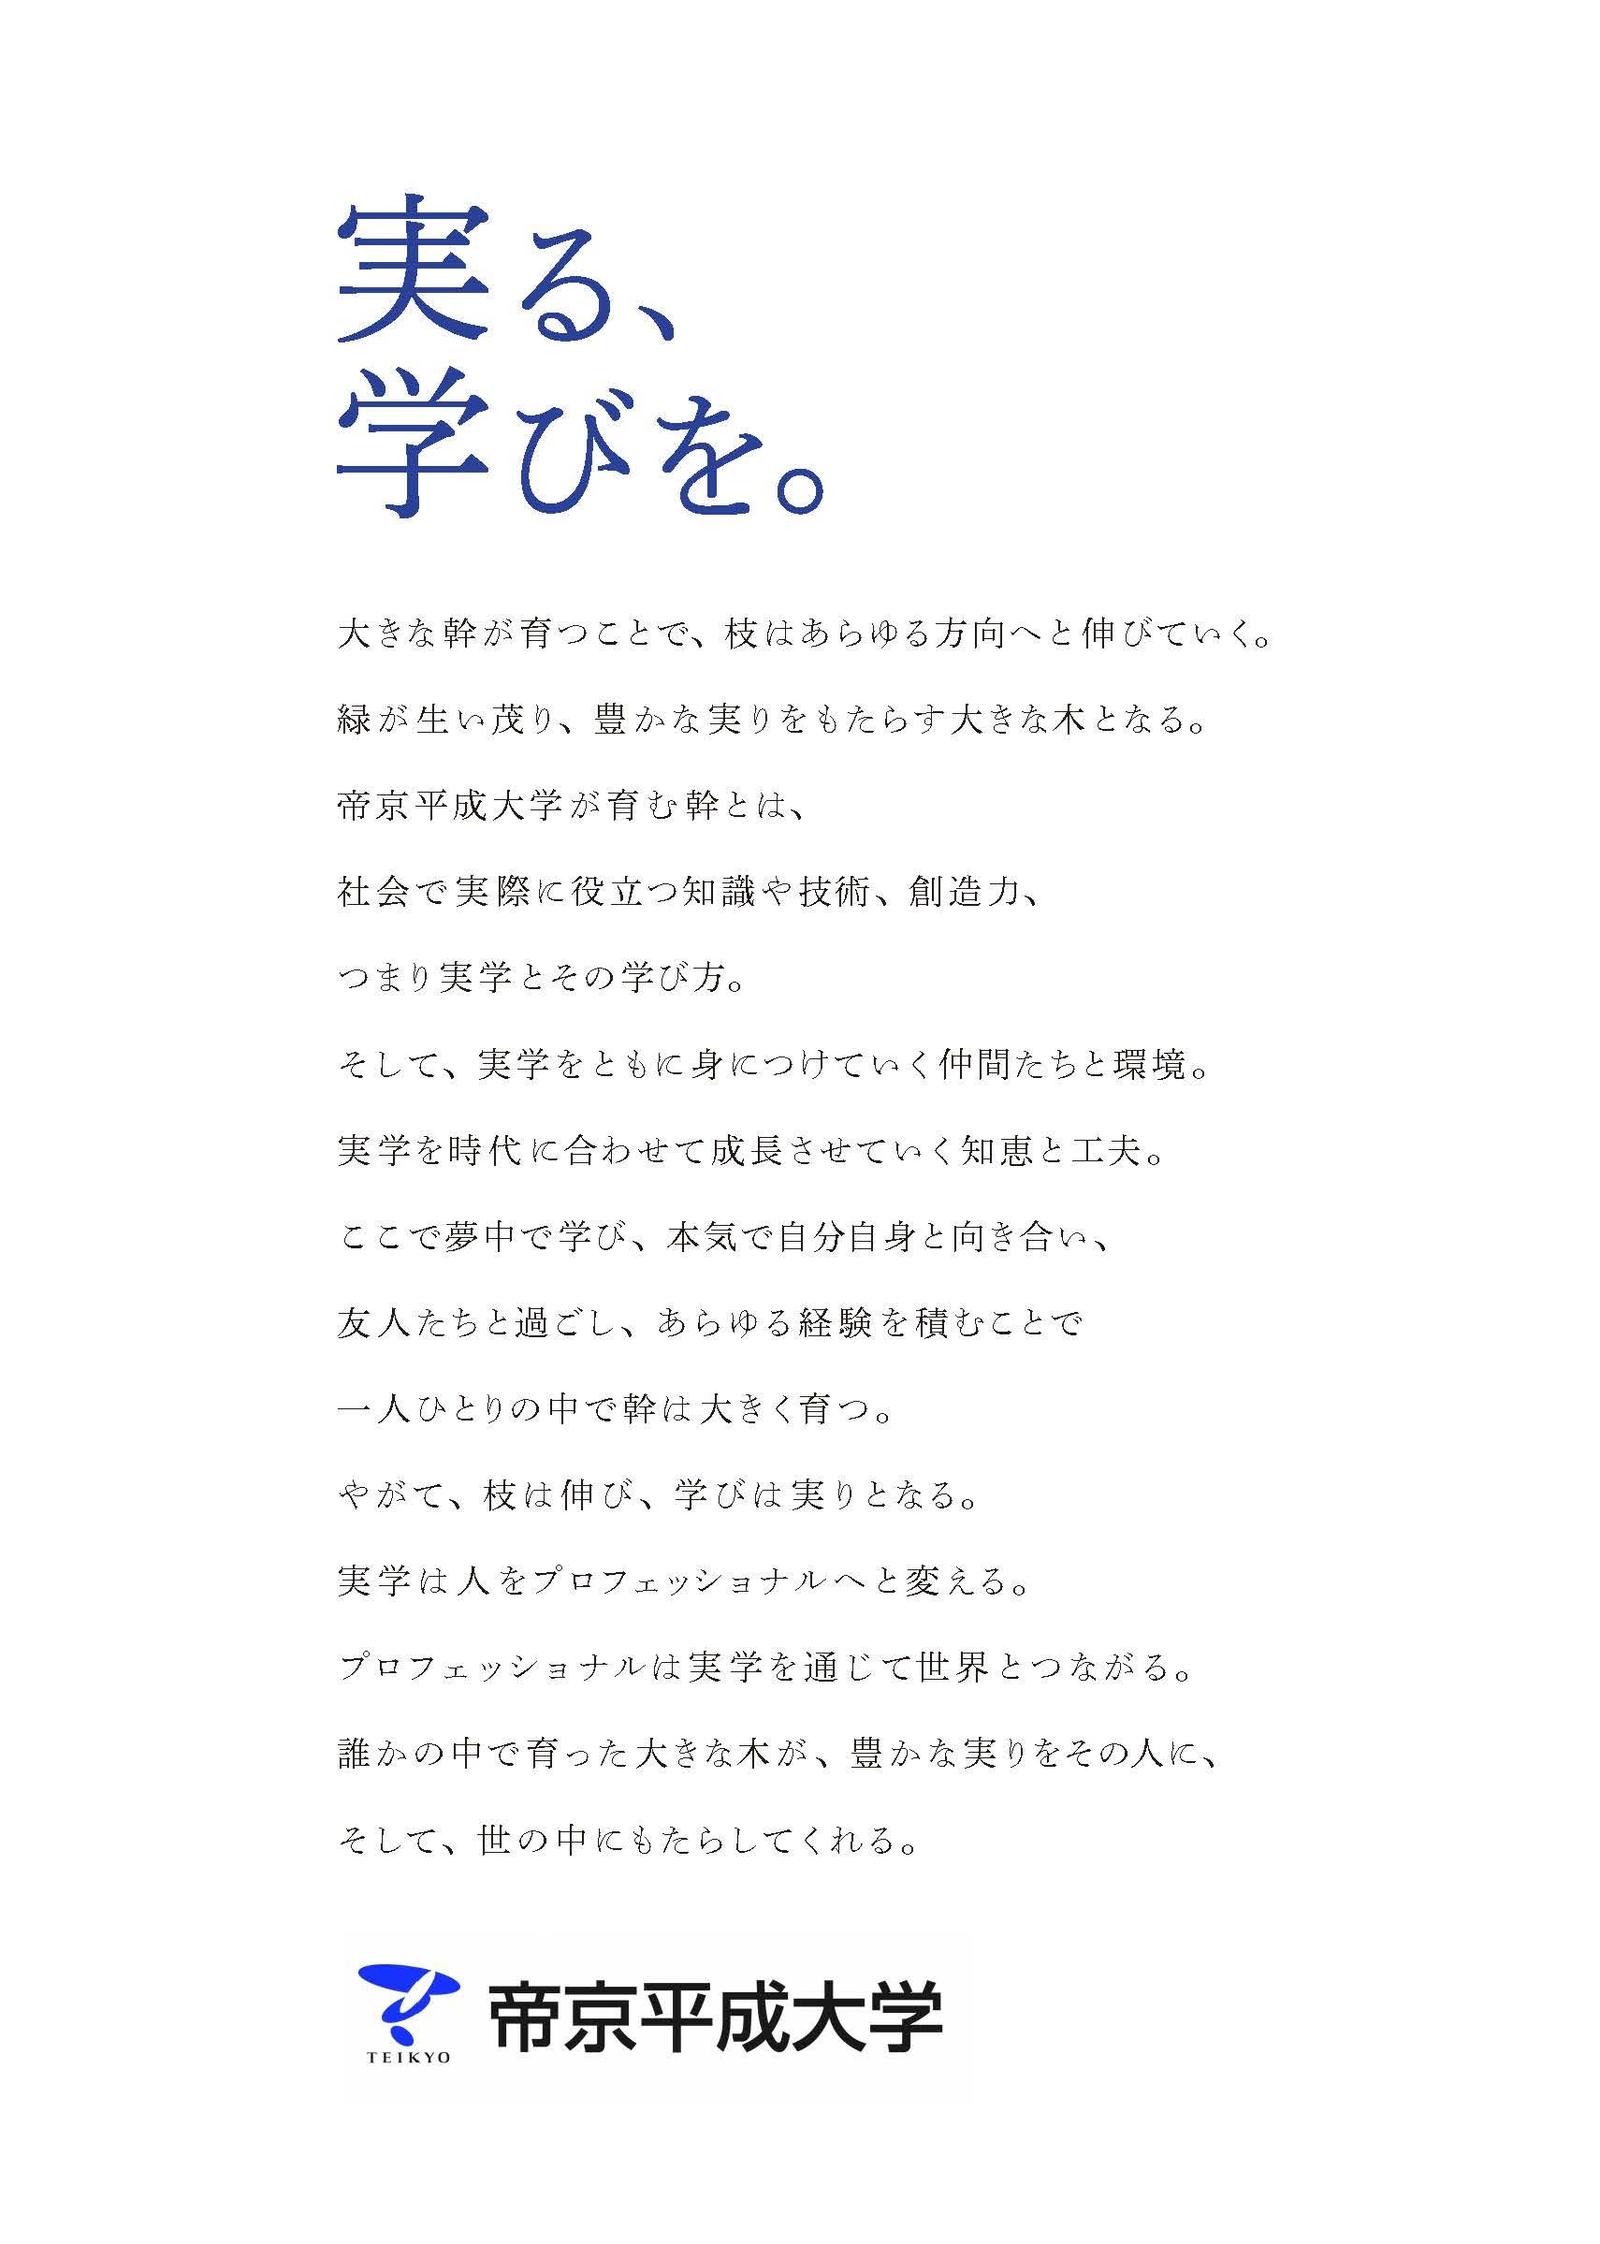 帝京平成大学が新キャッチコピー「実る、学びを。」を発表 - 大学プレスセンター